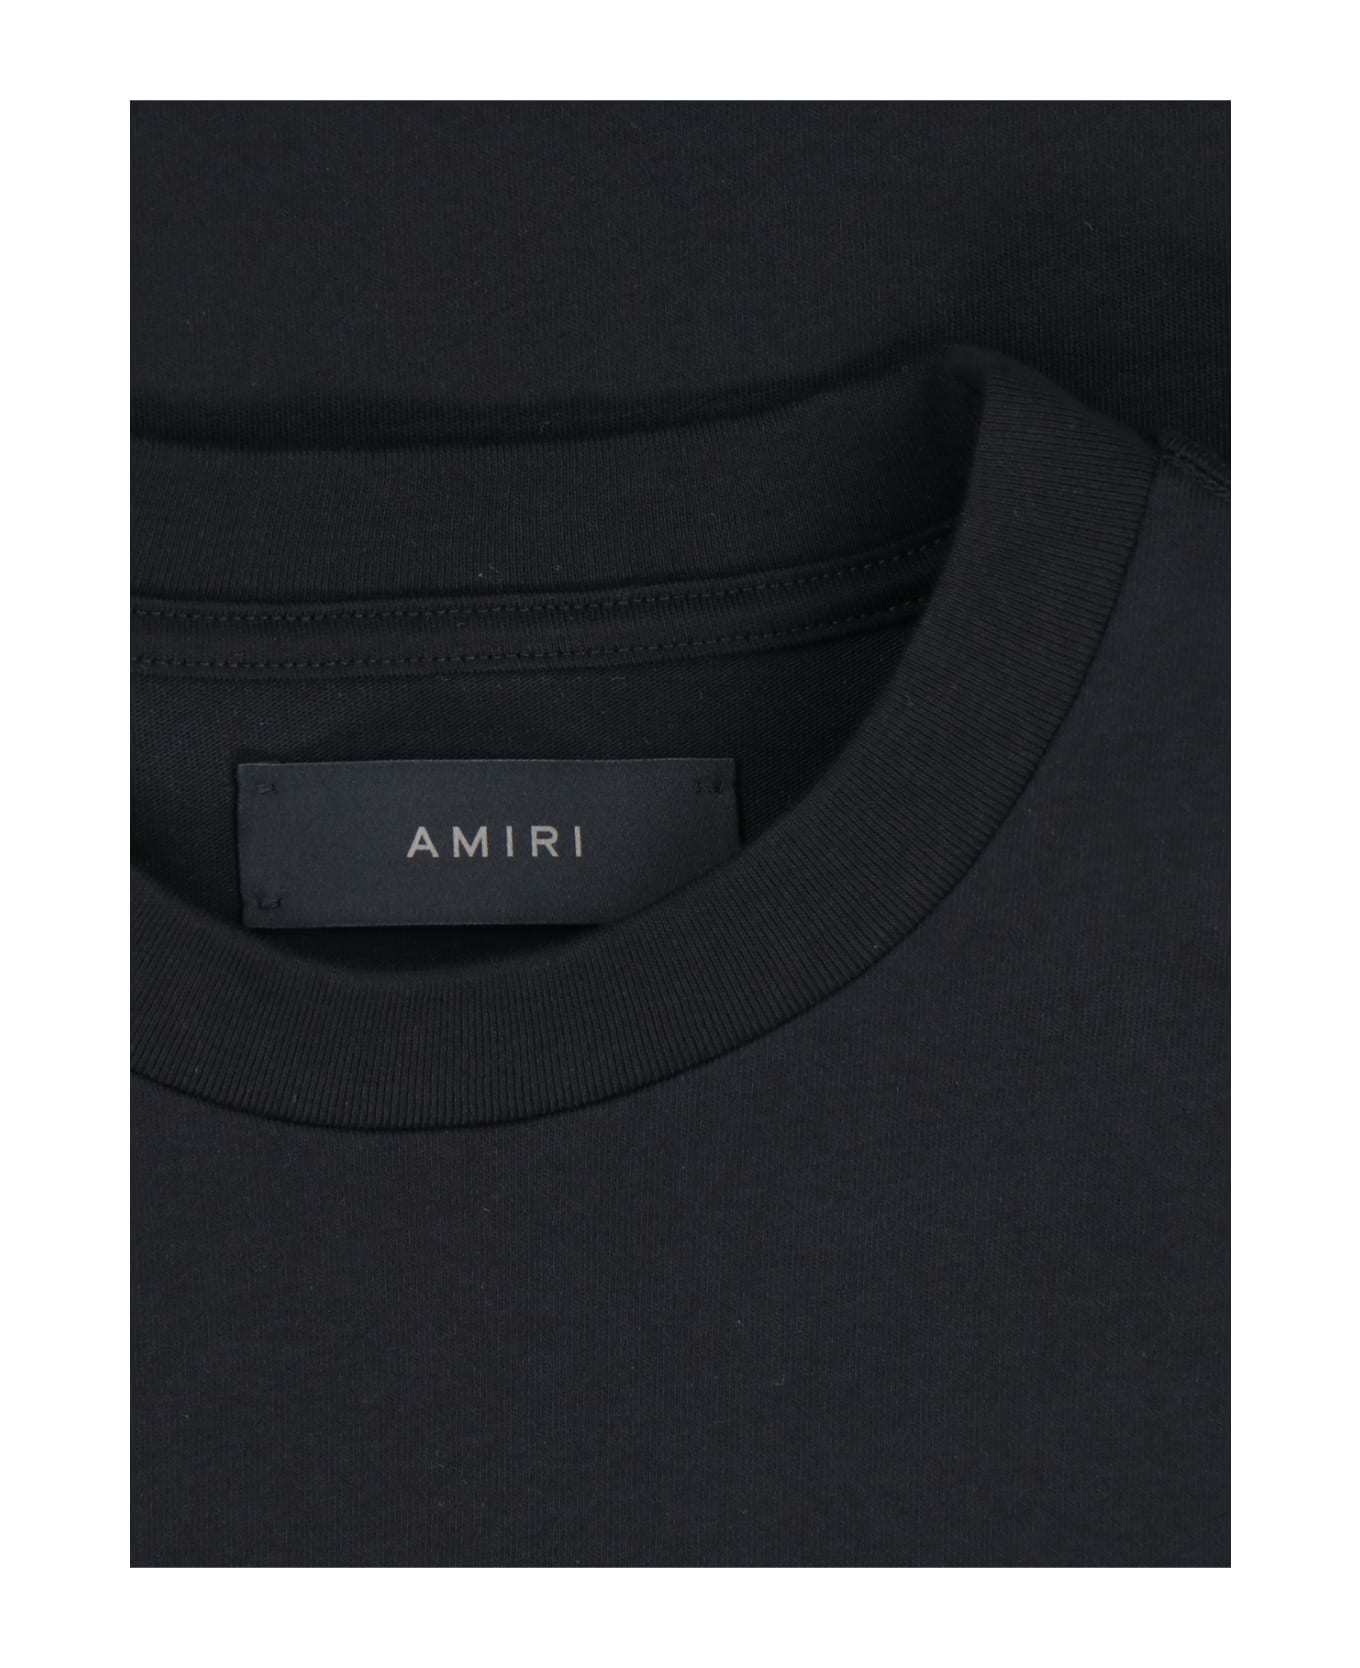 AMIRI Back Logo T-shirt - Black  